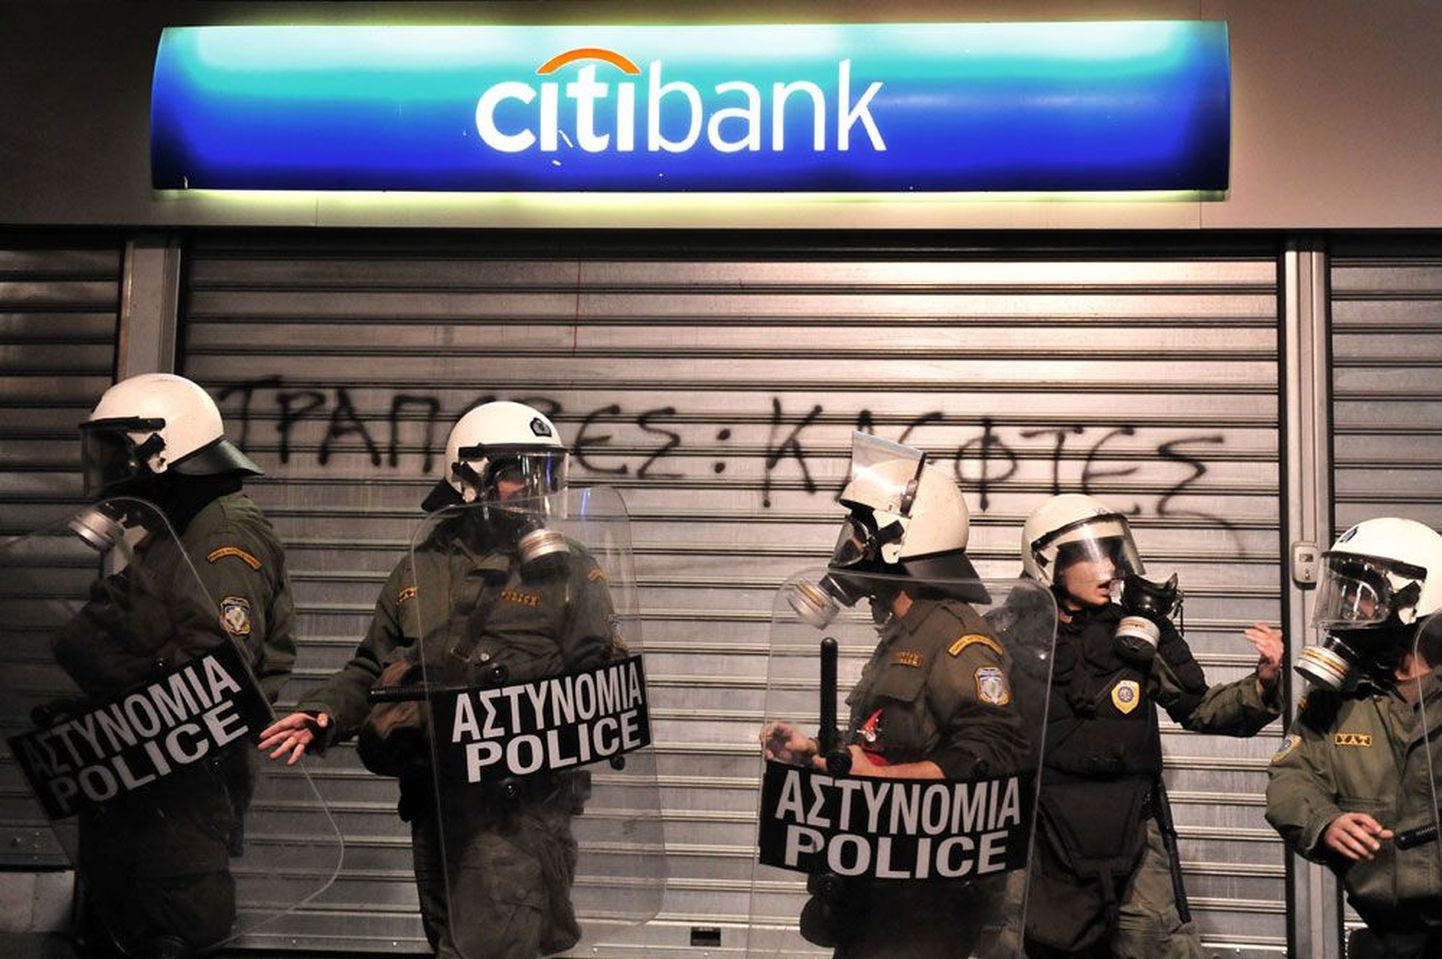 Kreeka 23. märtsil 2010: märulipolitsei  valvamas suletud pangahoonet riigiametnike meeleavalduse ajal. Viimased protestivad valitsuse kärpekavade vastu.